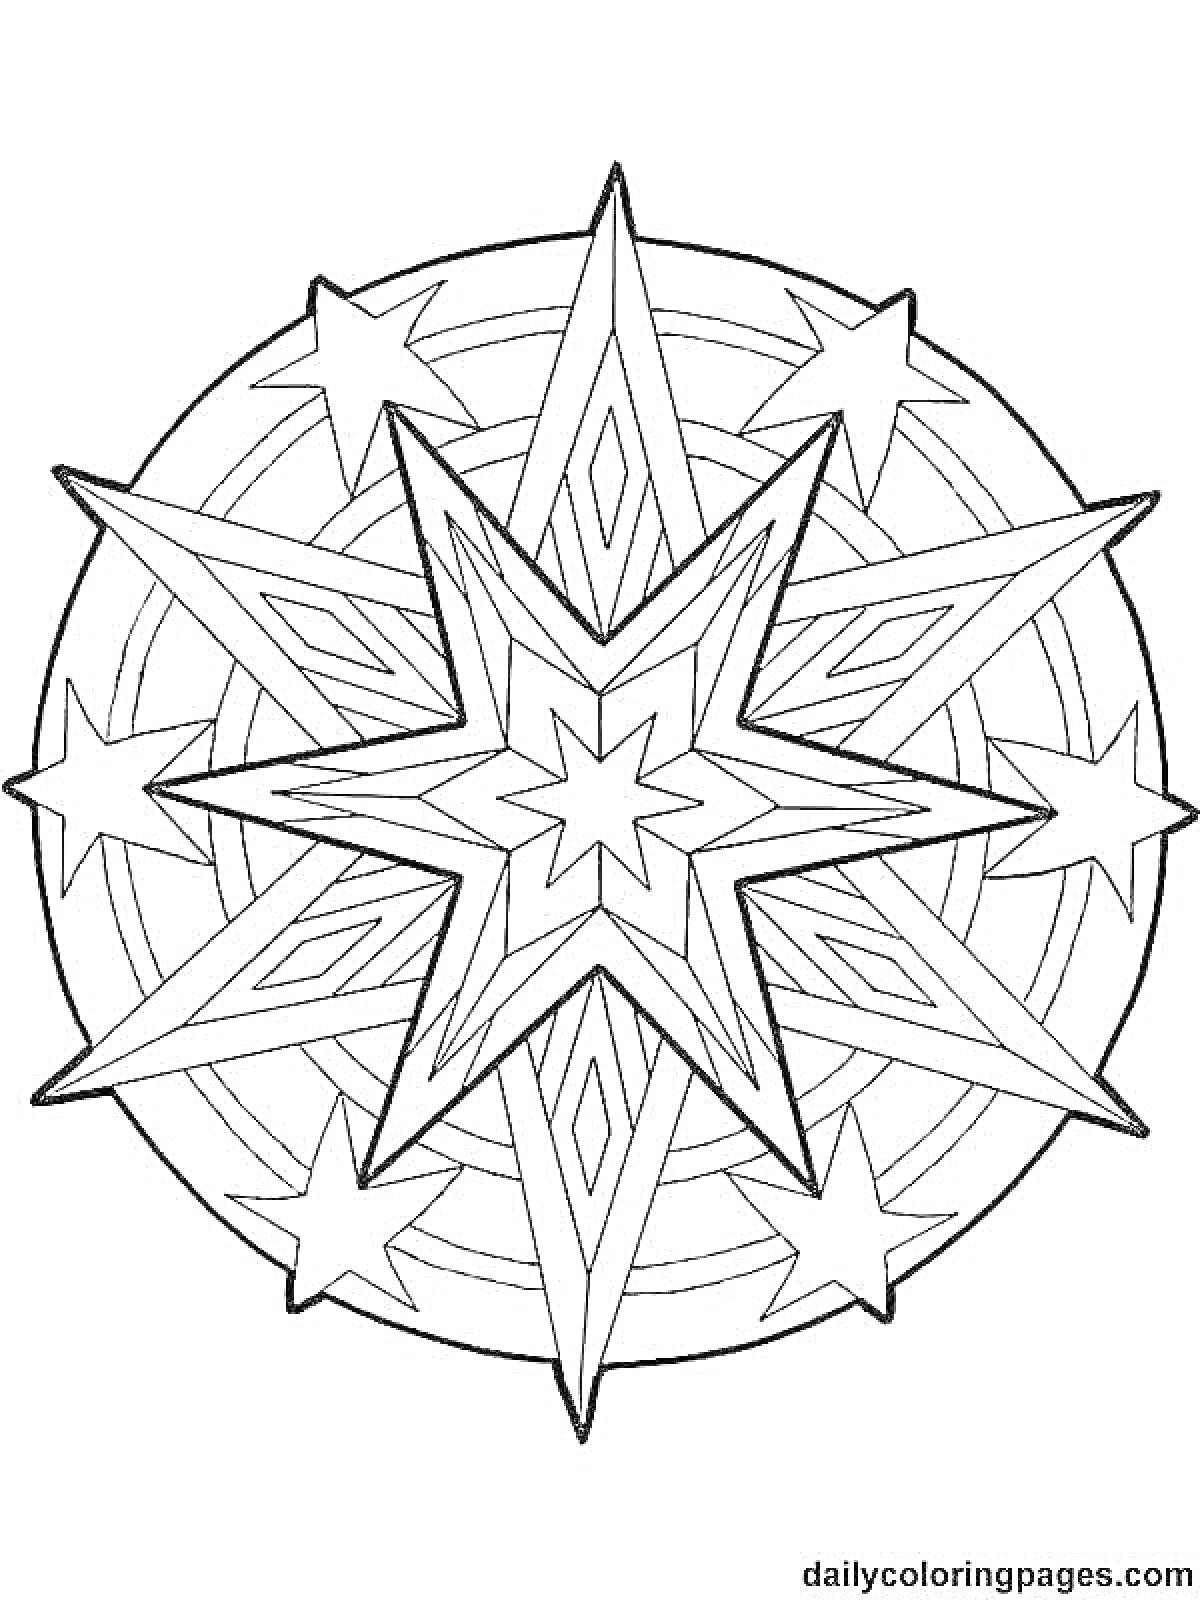 Вифлеемская звезда с центральной восьмиконечной звездой и окружностью с маленькими звездами